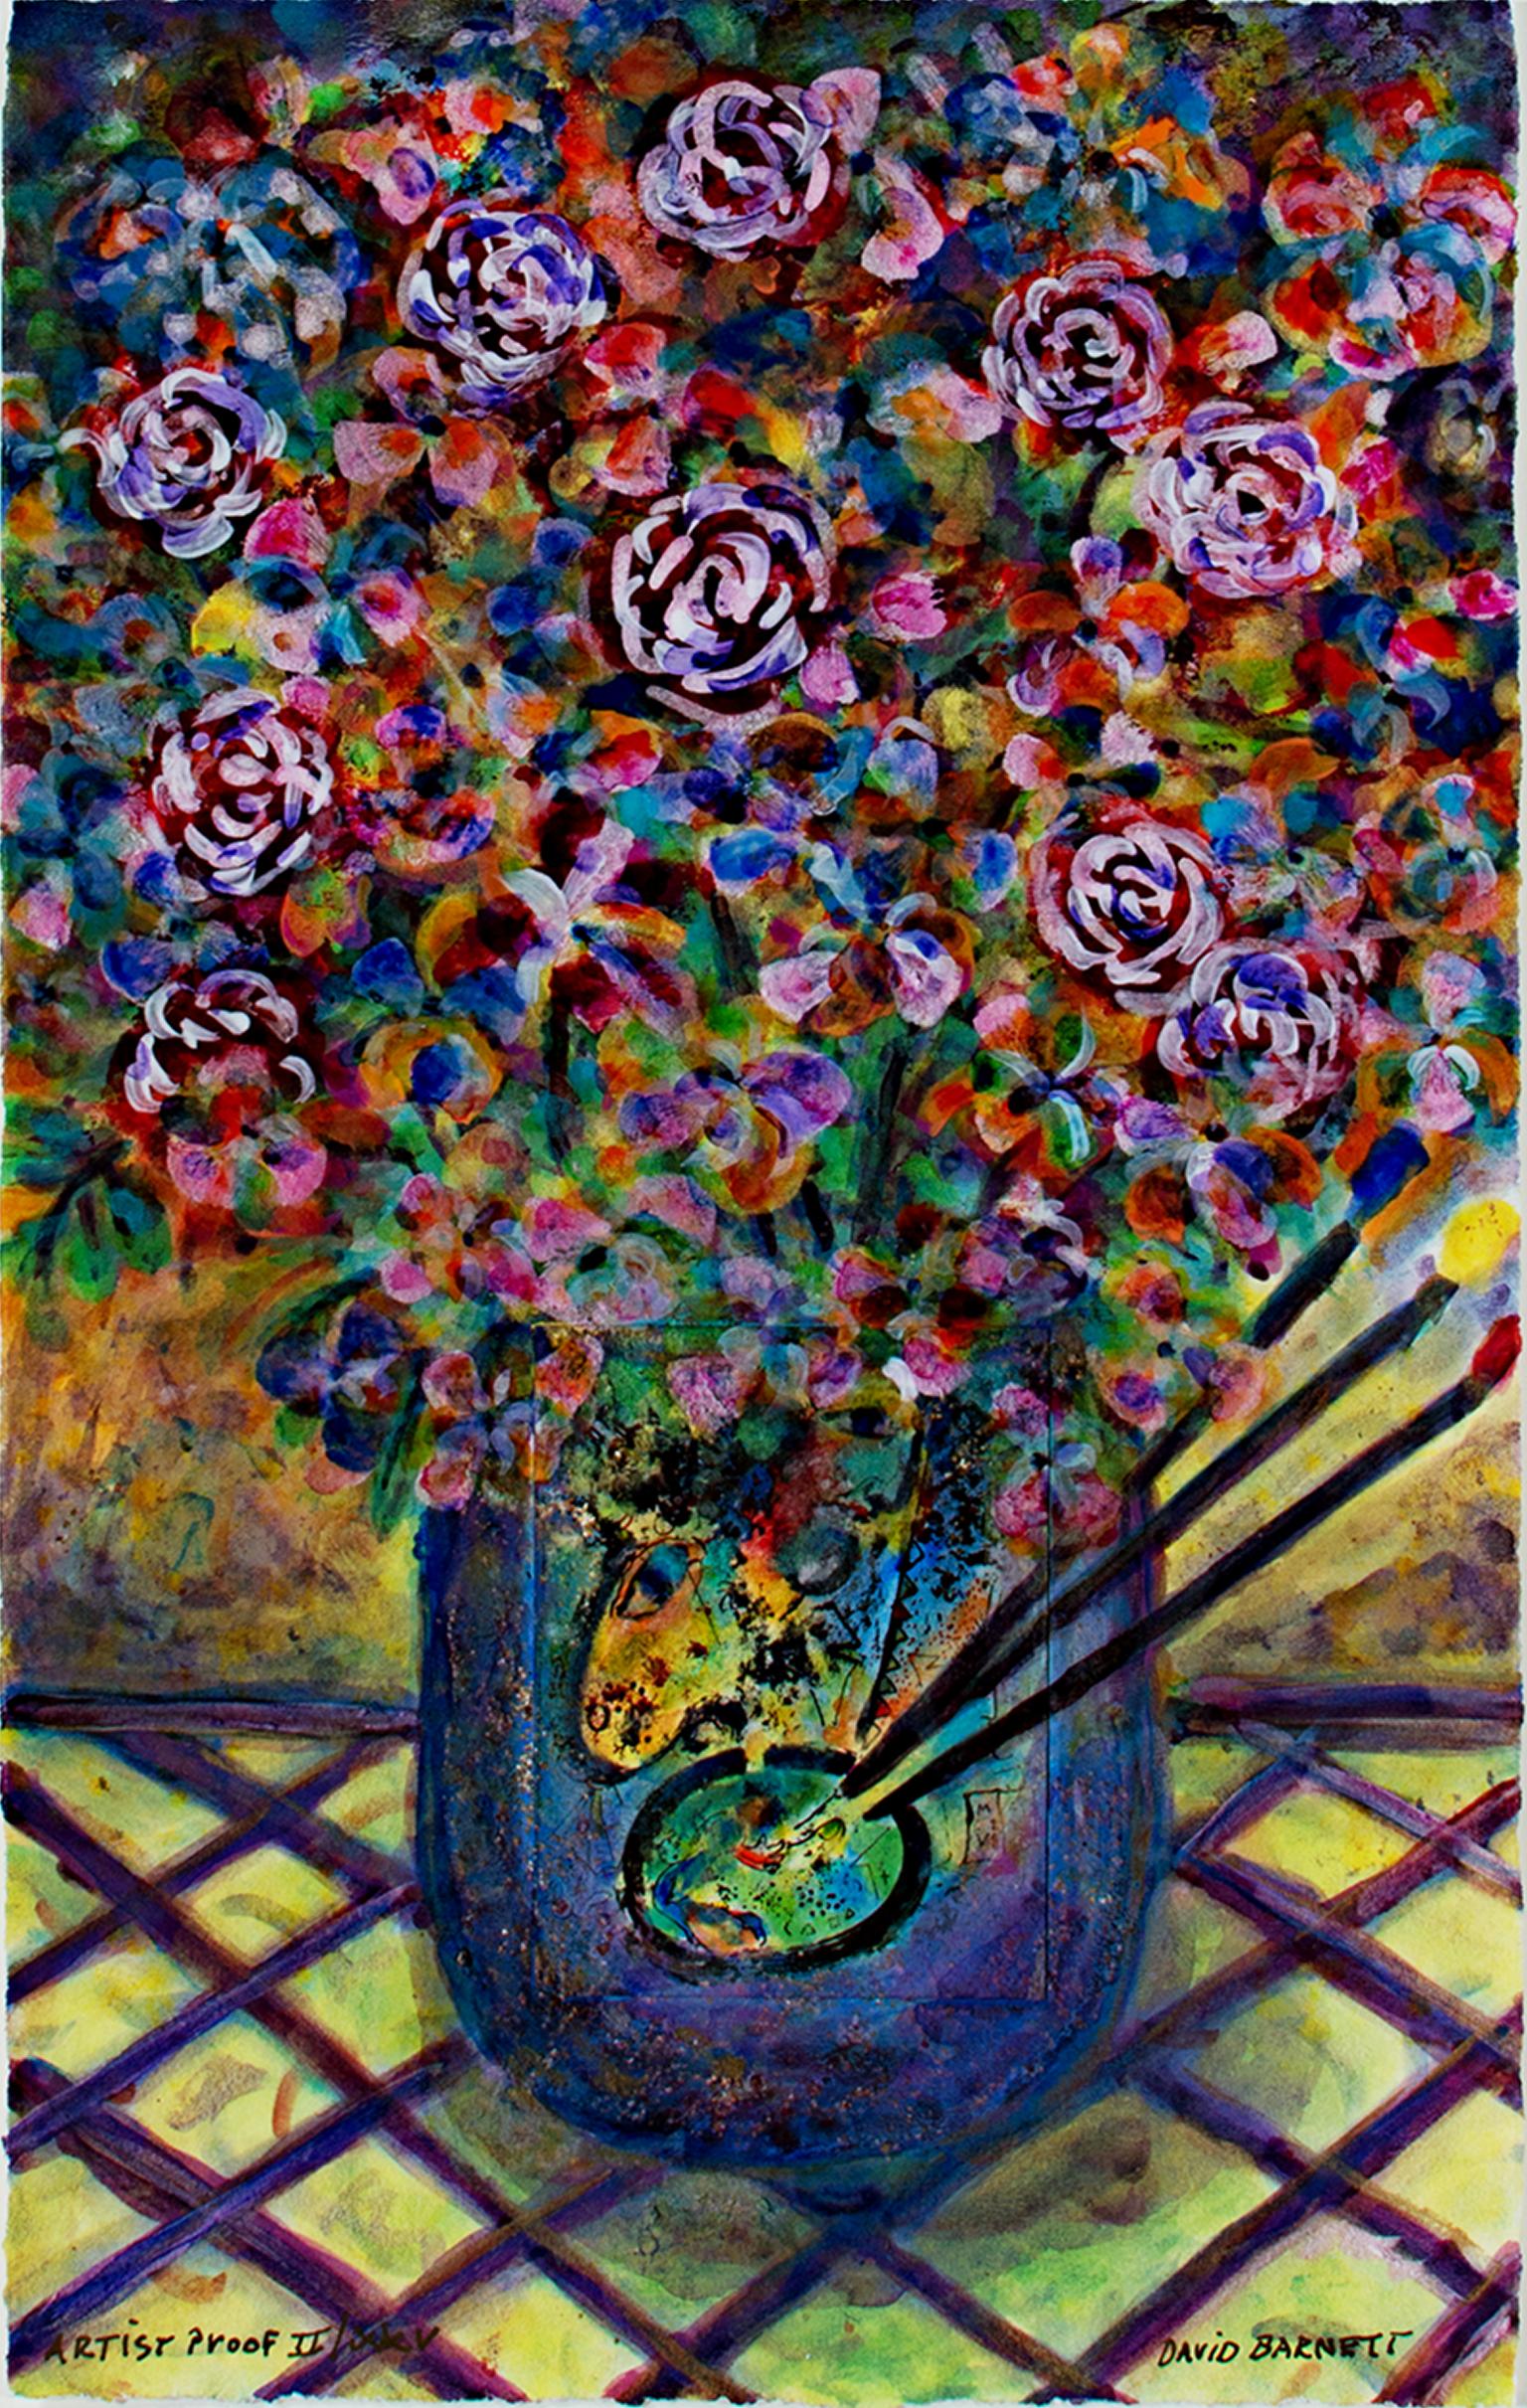 "Famous Artist Series : Homage to March Chagall - Artist's Palette Bouquet" est une impression giclée d'après l'œuvre originale en techniques mixtes de David Barnett datant de 2008. Un bouquet de fleurs aux couleurs de l'arc-en-ciel dans un vase